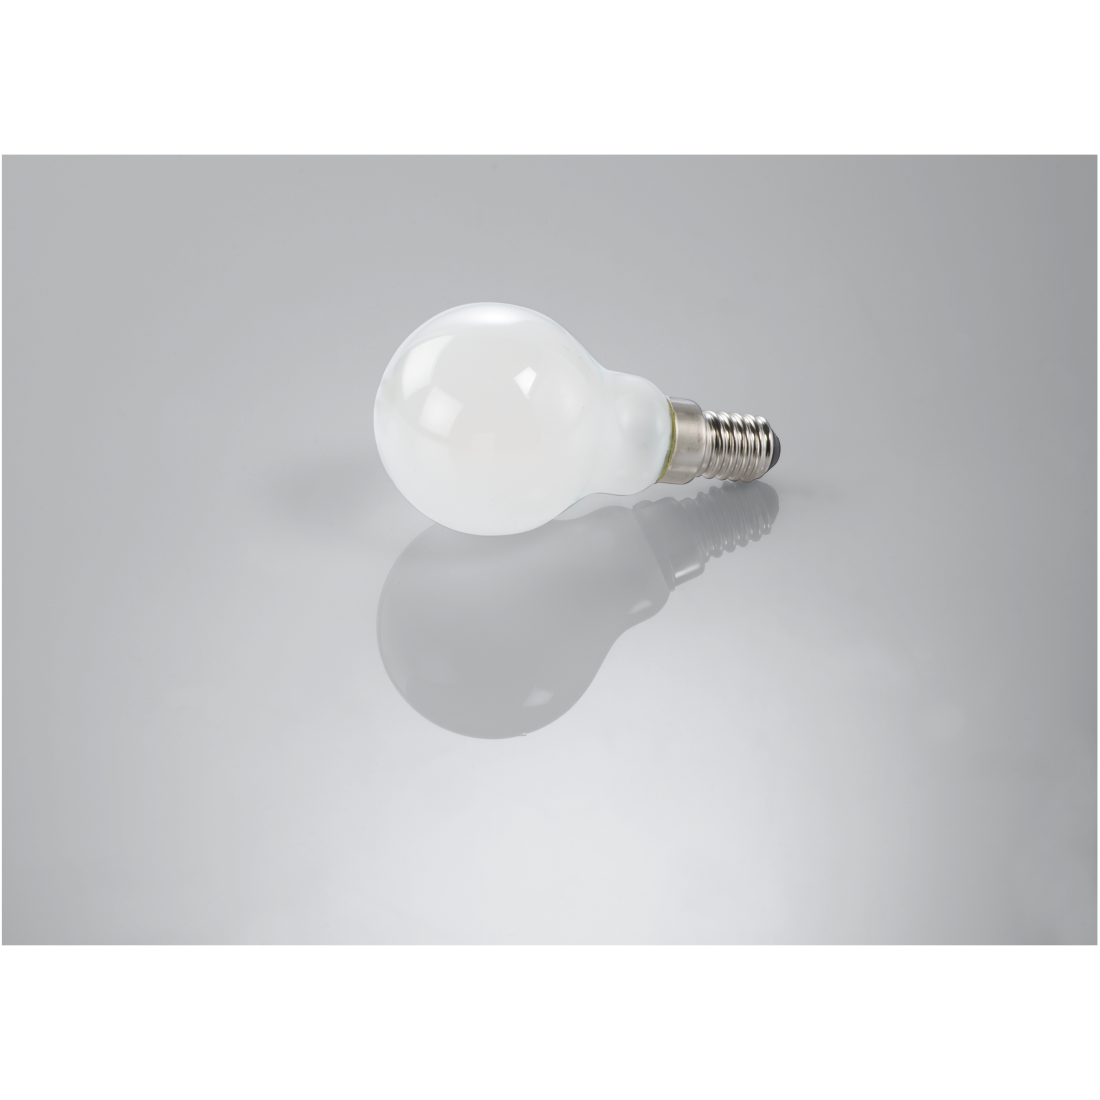 abx3 High-Res Image 3 - Xavax, Ampoule filament LED, E14, 250lm remp. 25W, amp. goutte, mate, blc chd